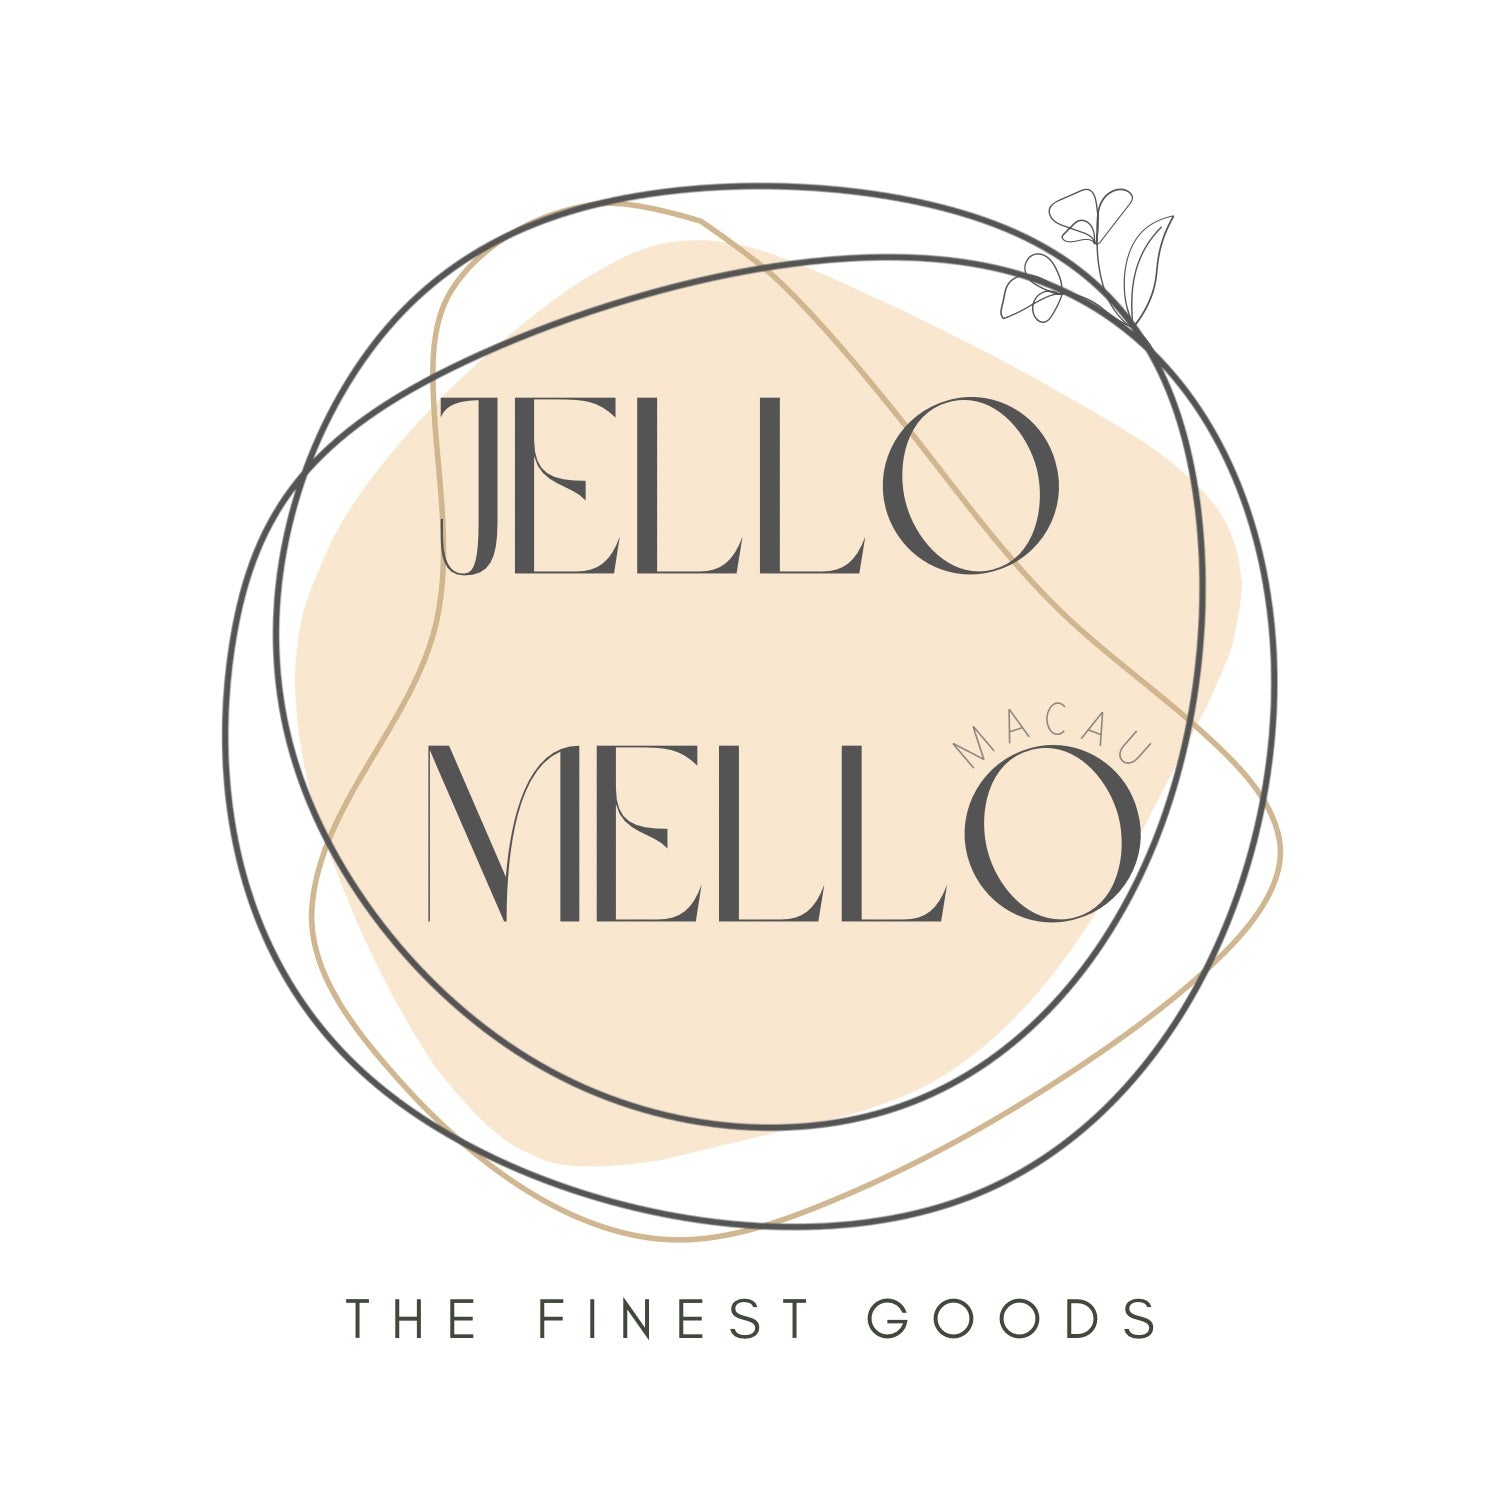 Jello Mello Macau